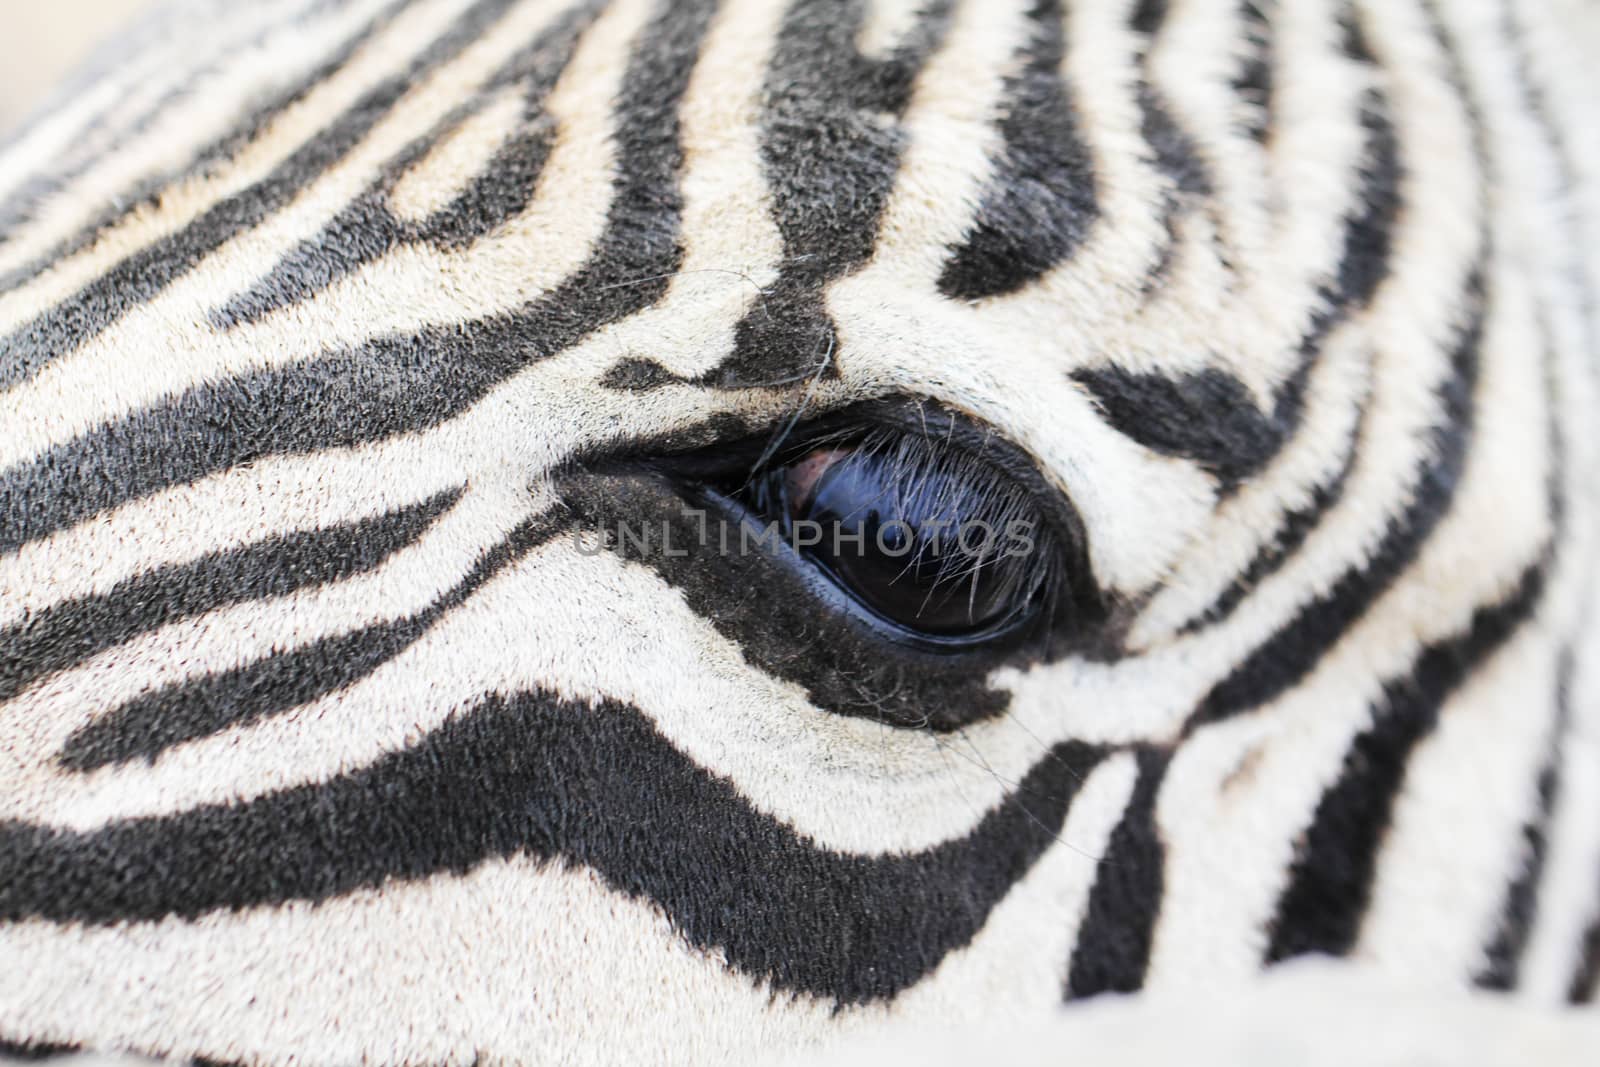 Eye of zebra close up by Voinakh